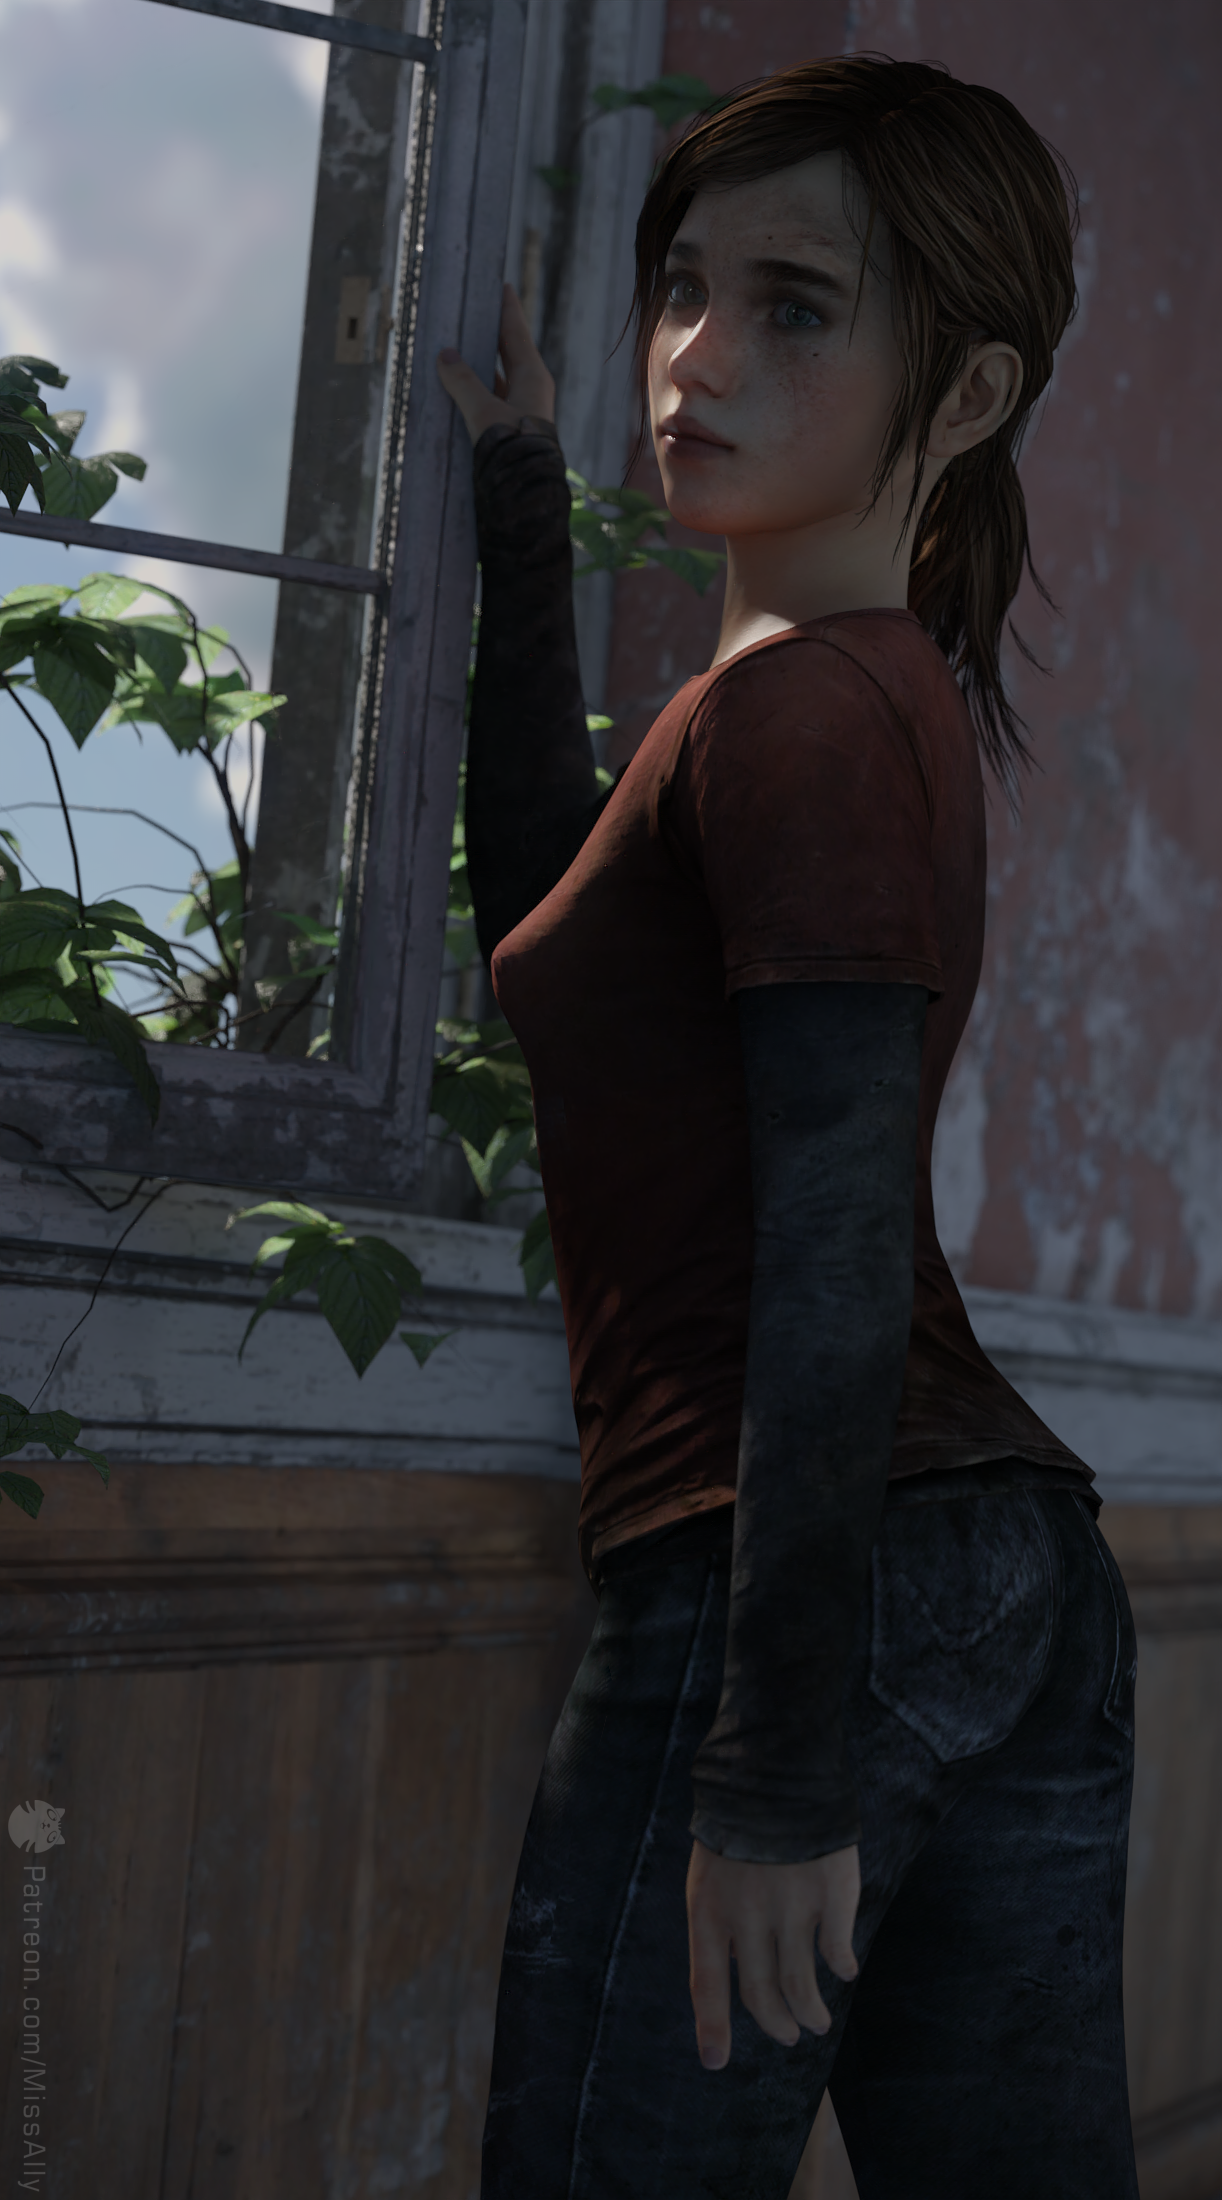 Ellie - The Last of Us by JA-Renders on DeviantArt